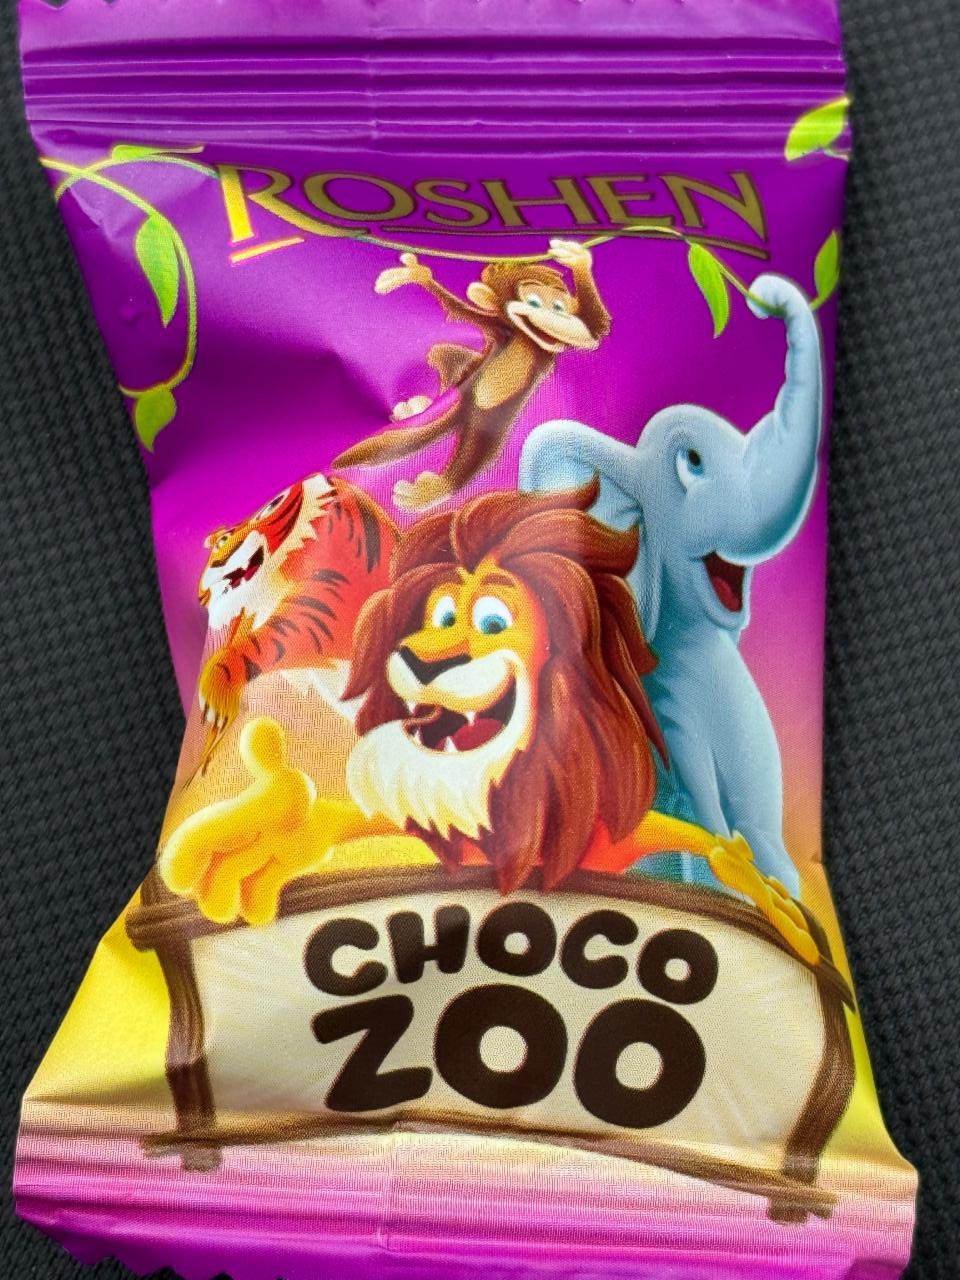 Фото - Конфеты шоколадные с кремово-молочной начинкой Choco Zoo Рошен Roshen